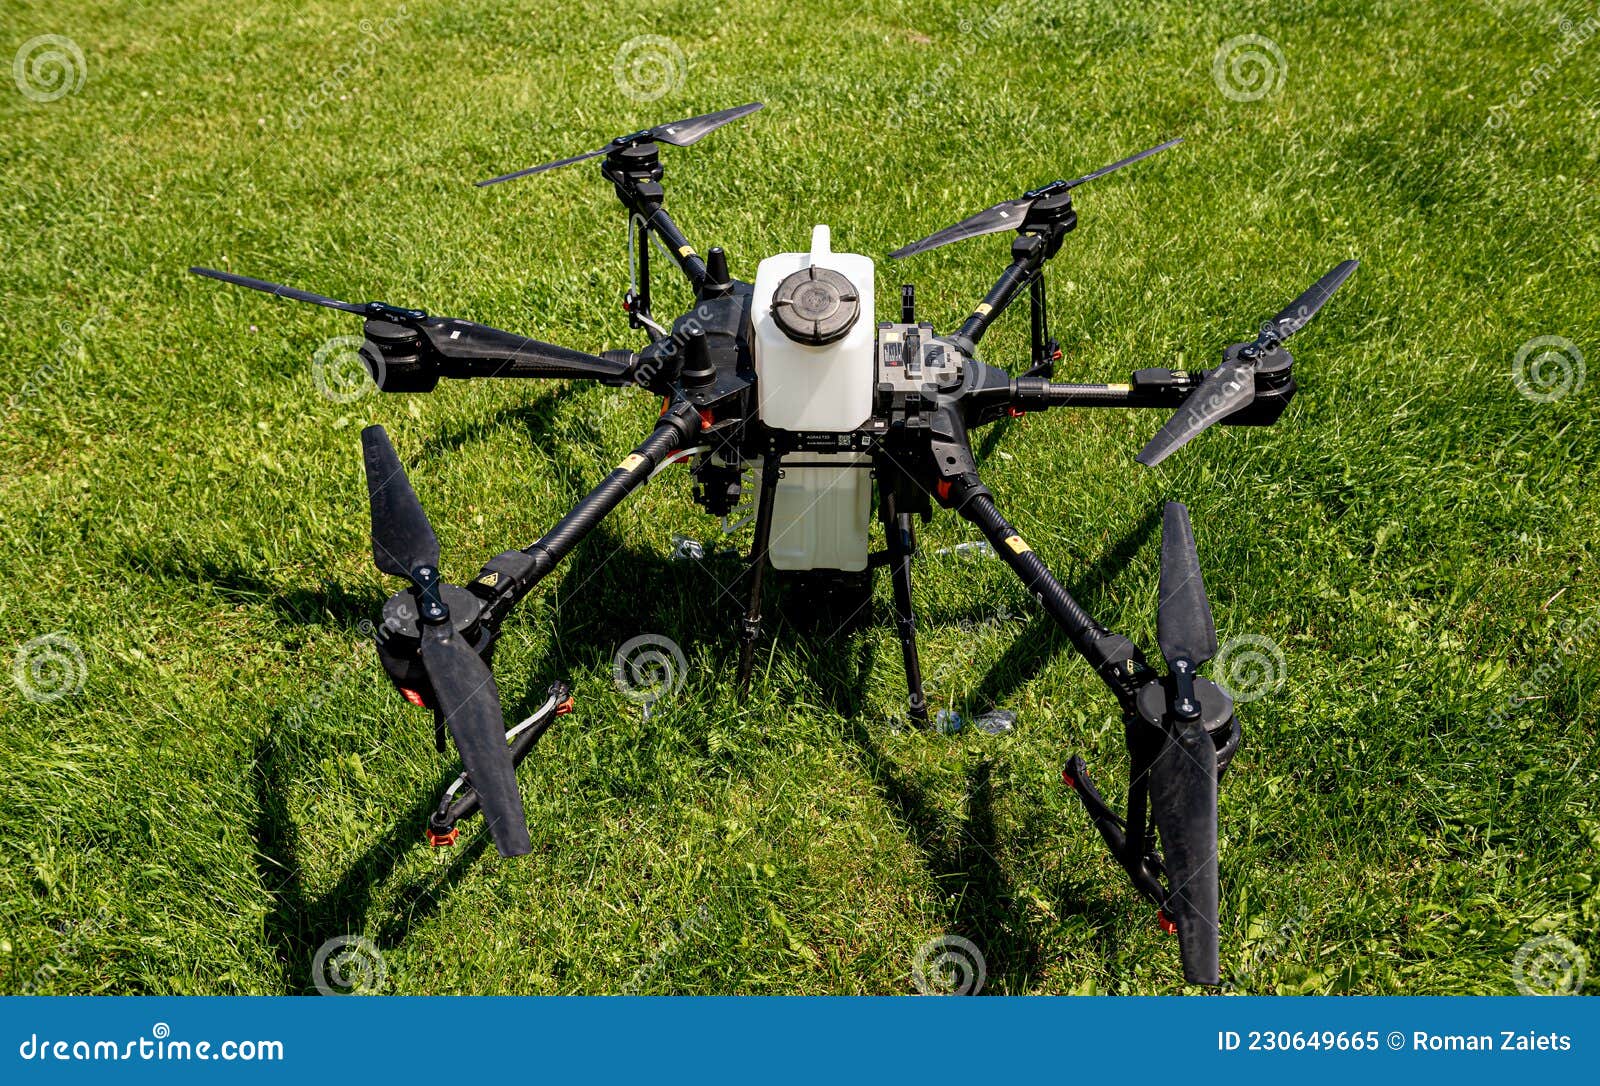 Drone Professionnel De L'agriculture Sur Le Terrain Vert Image